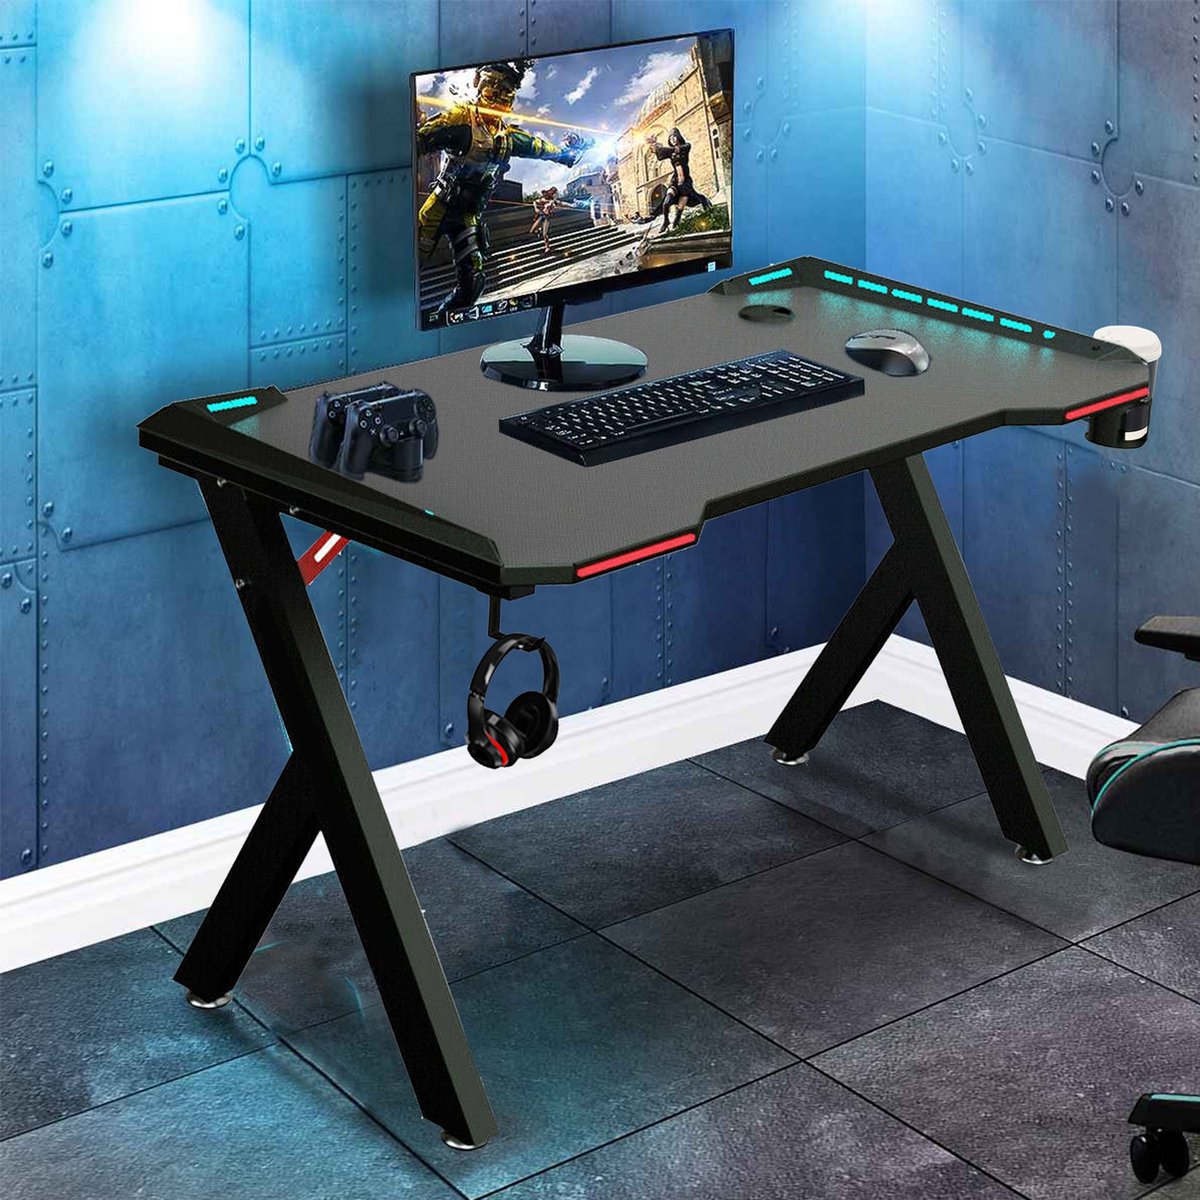 Excape Bureau - Ergonomische Gaming Desk - Bureau Met RGB-LED Verlichting - Zwart - Carbon Look - 100x60x74cm